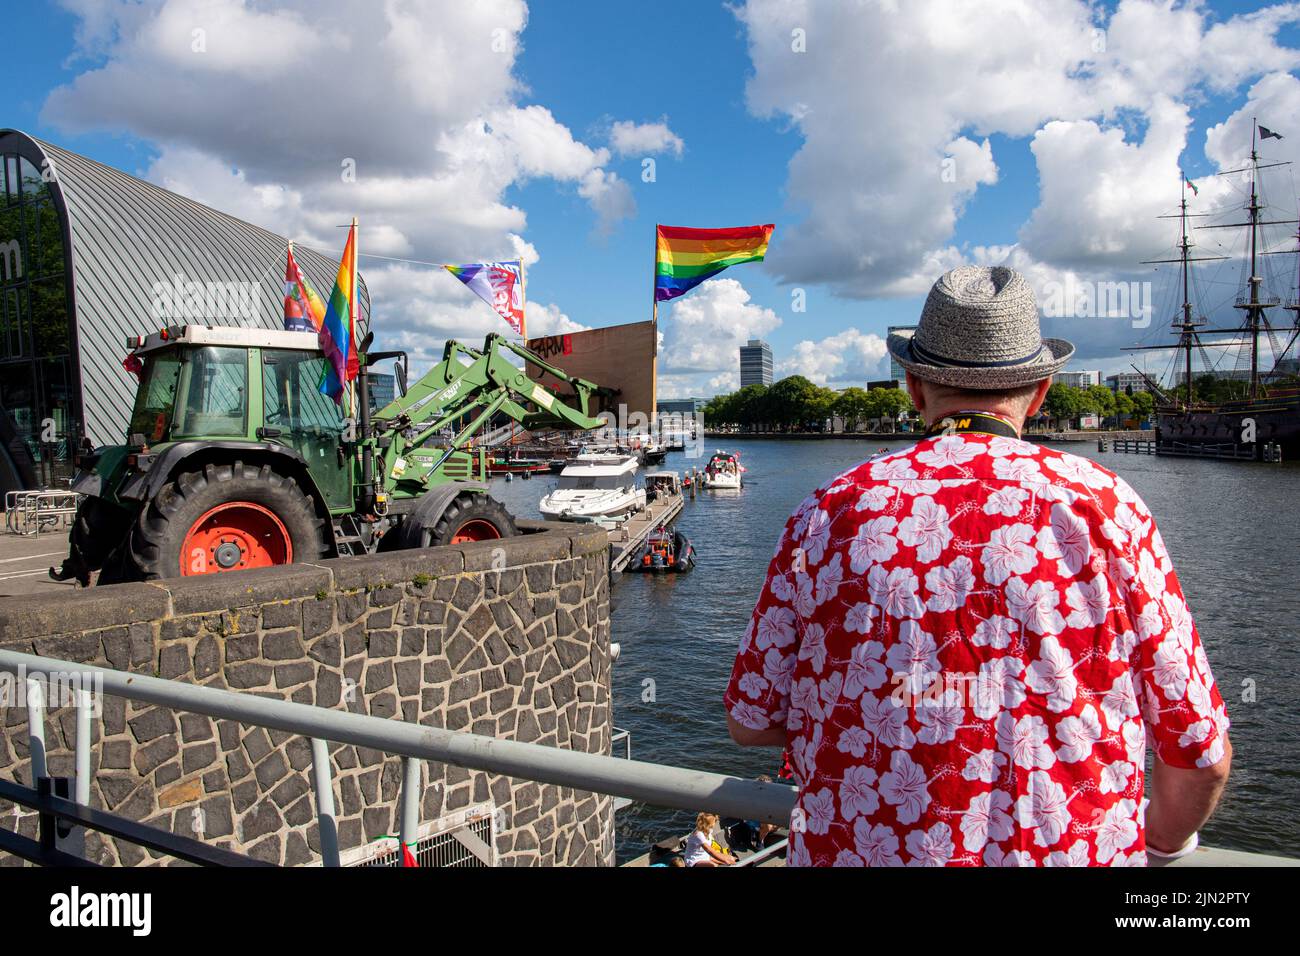 Während der Pride 2022 protestieren Bauern über die Grachtenparade durch die Grachten von Amsterdam. Die Parade ist die Hauptereignis von Pride Amsterdam 2022, einem Festival für die LGBTQ+ Gemeinschaft, mit dem diesjährigen Thema My Gender, My Pride. (Foto von DPPA/Sipa USA) Stockfoto